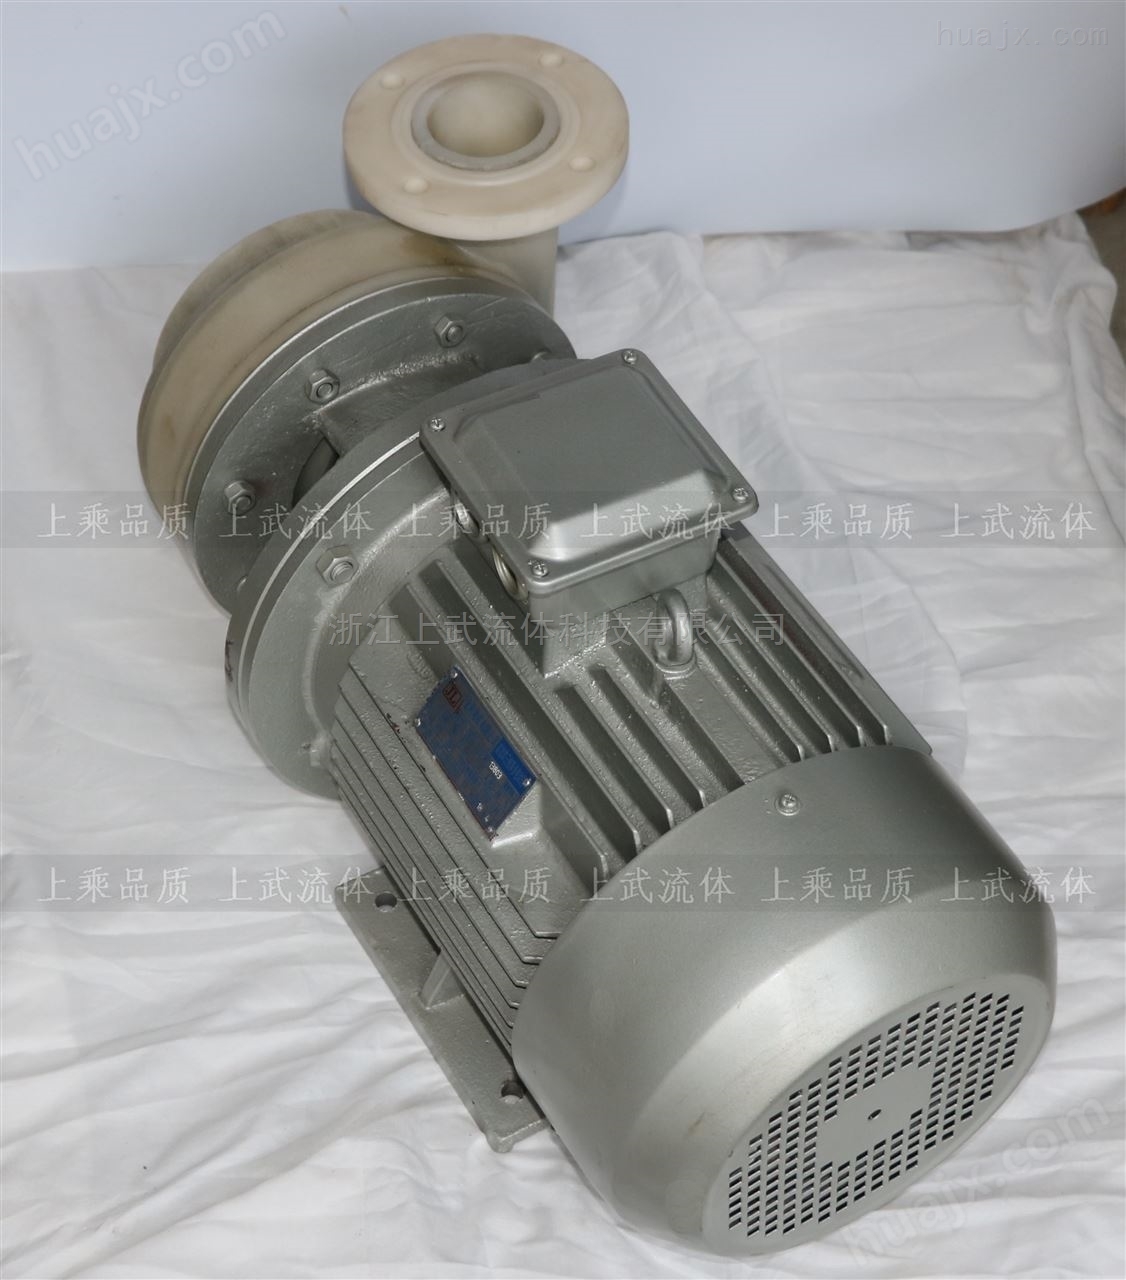 PF100-80-160塑料化工泵离心泵